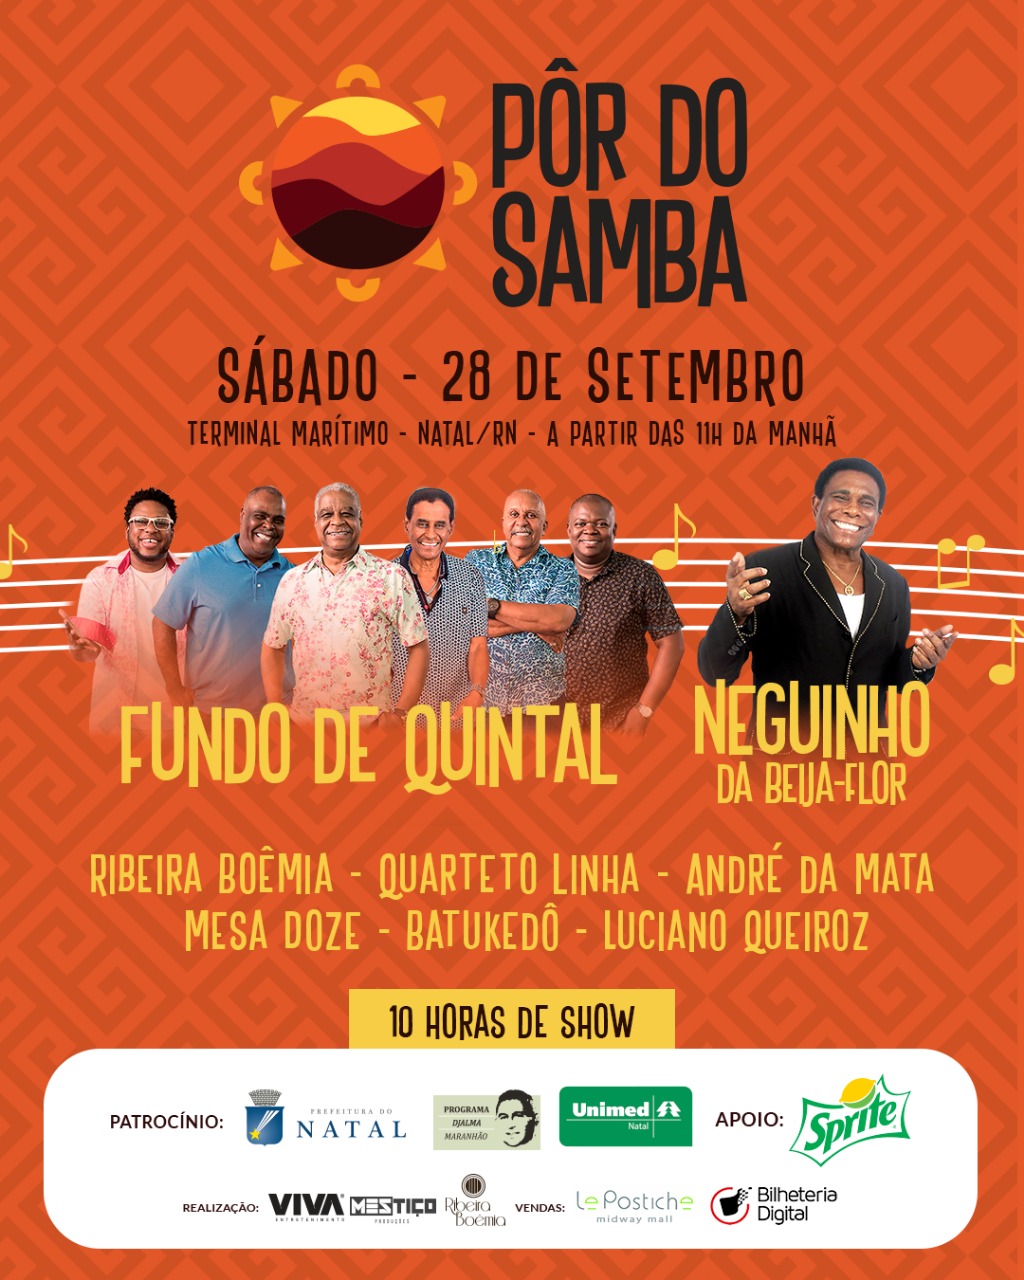 Últimos ingressos para o maior festival de samba do RN